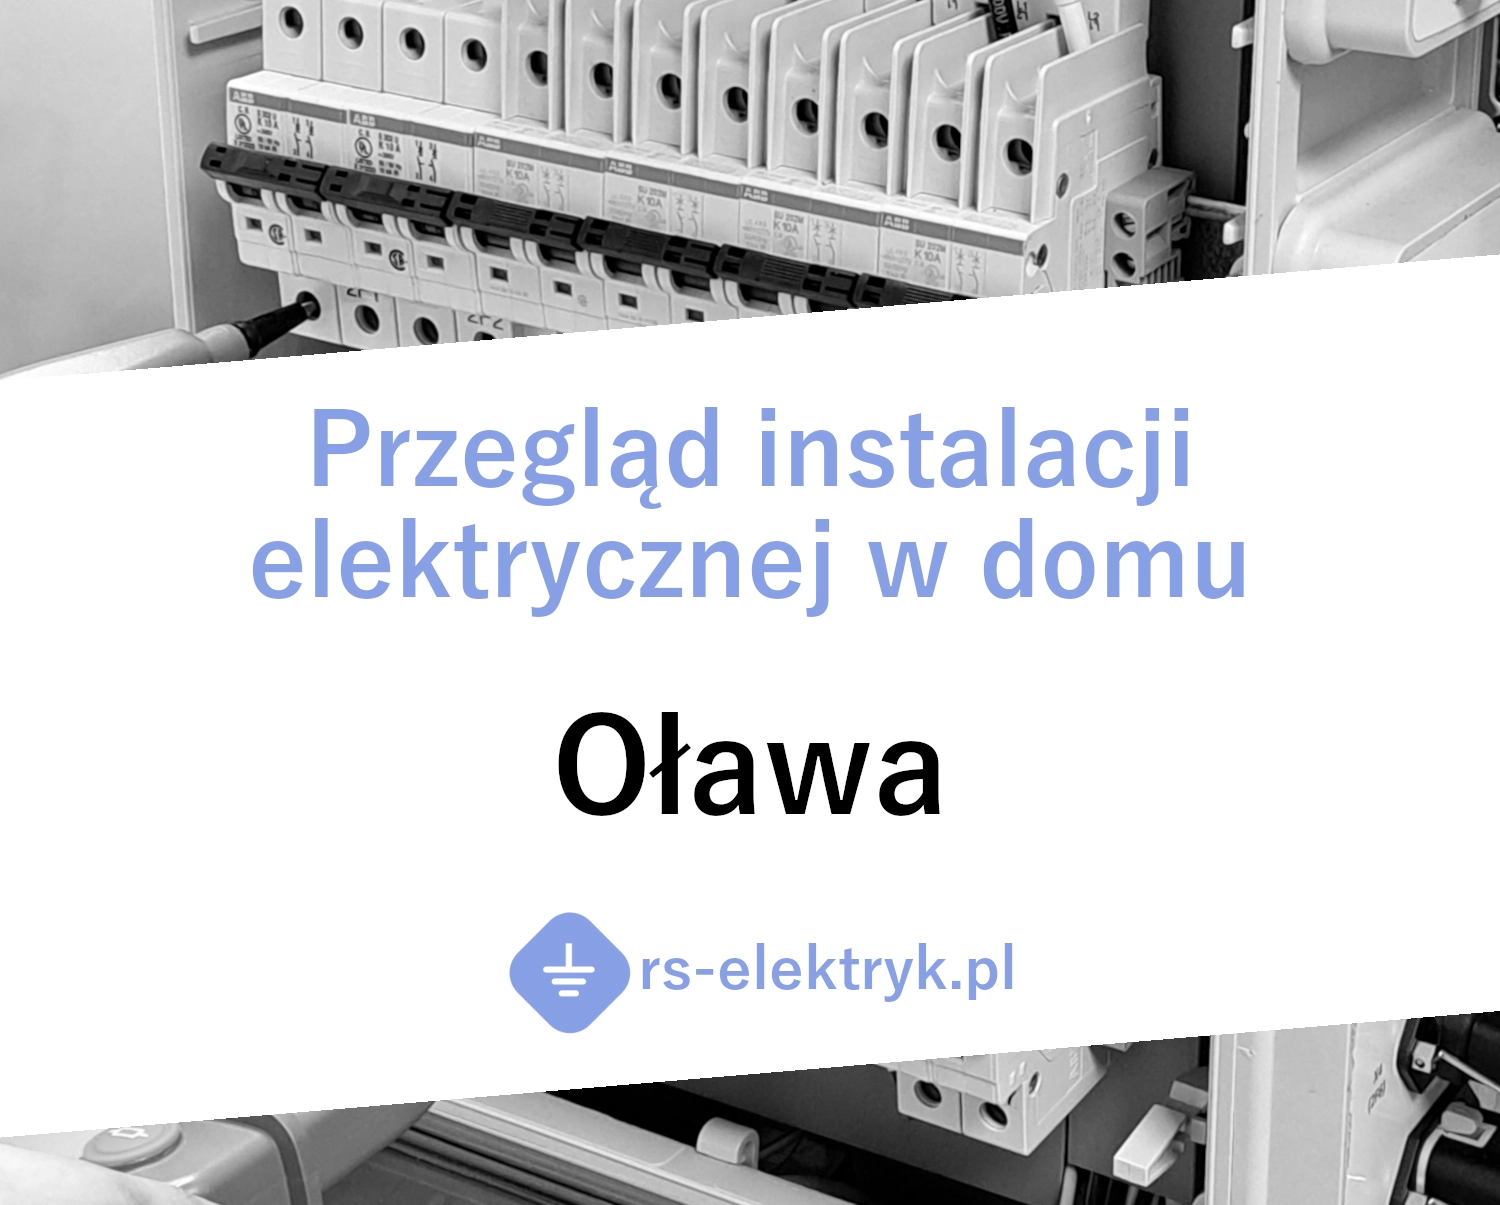 Przegląd instalacji elektrycznej w domu Oława